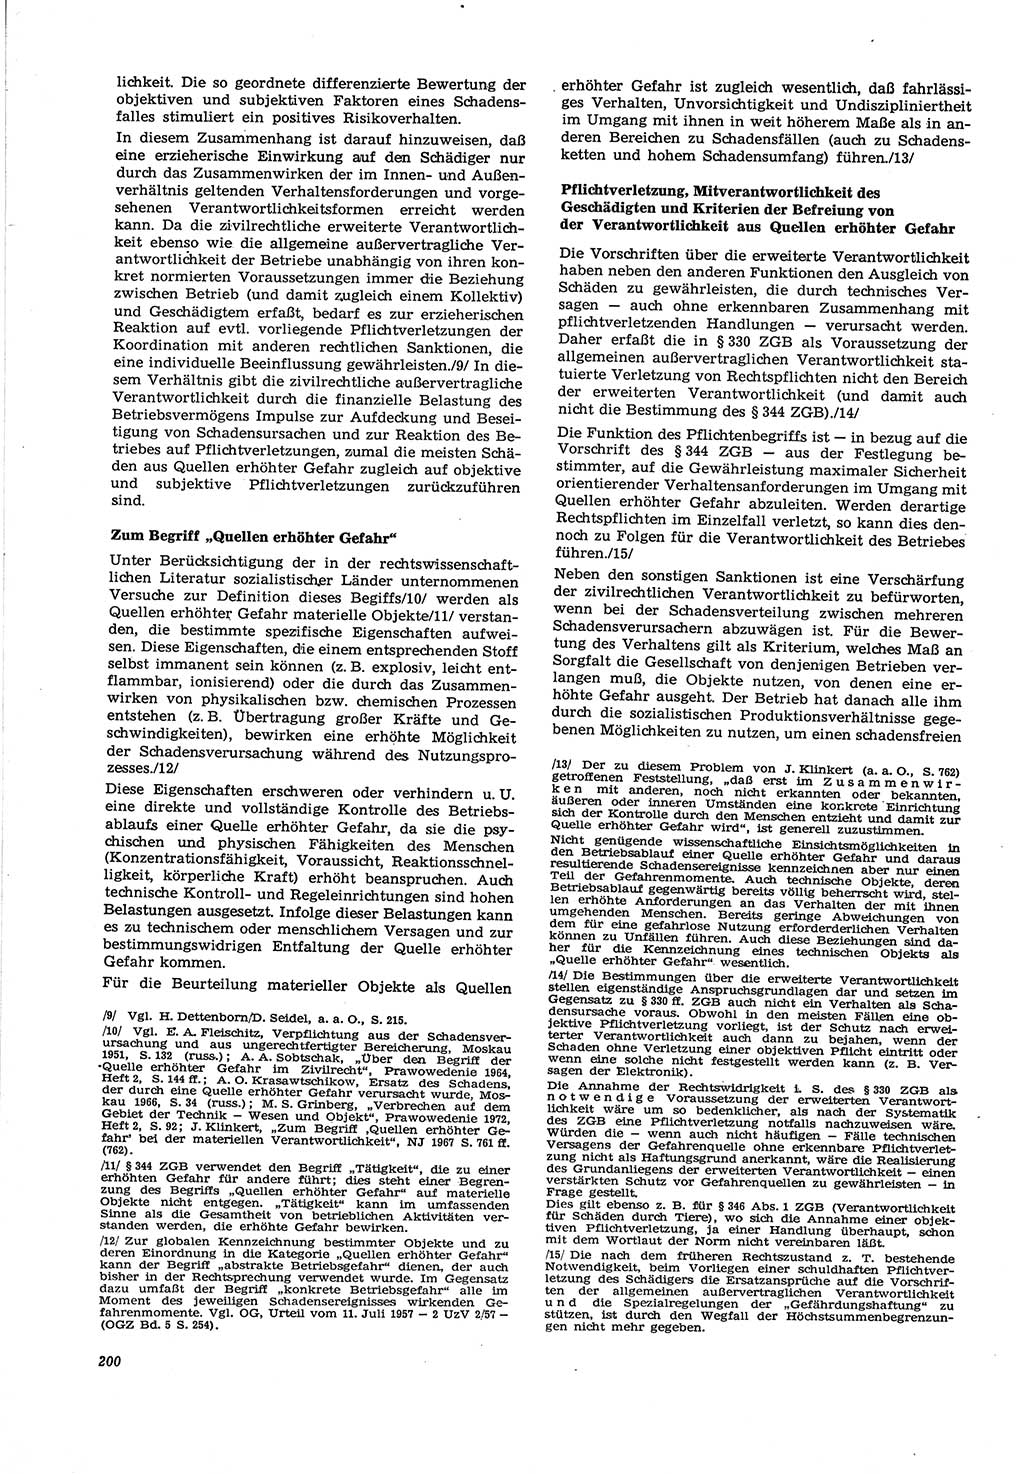 Neue Justiz (NJ), Zeitschrift für Recht und Rechtswissenschaft [Deutsche Demokratische Republik (DDR)], 30. Jahrgang 1976, Seite 200 (NJ DDR 1976, S. 200)